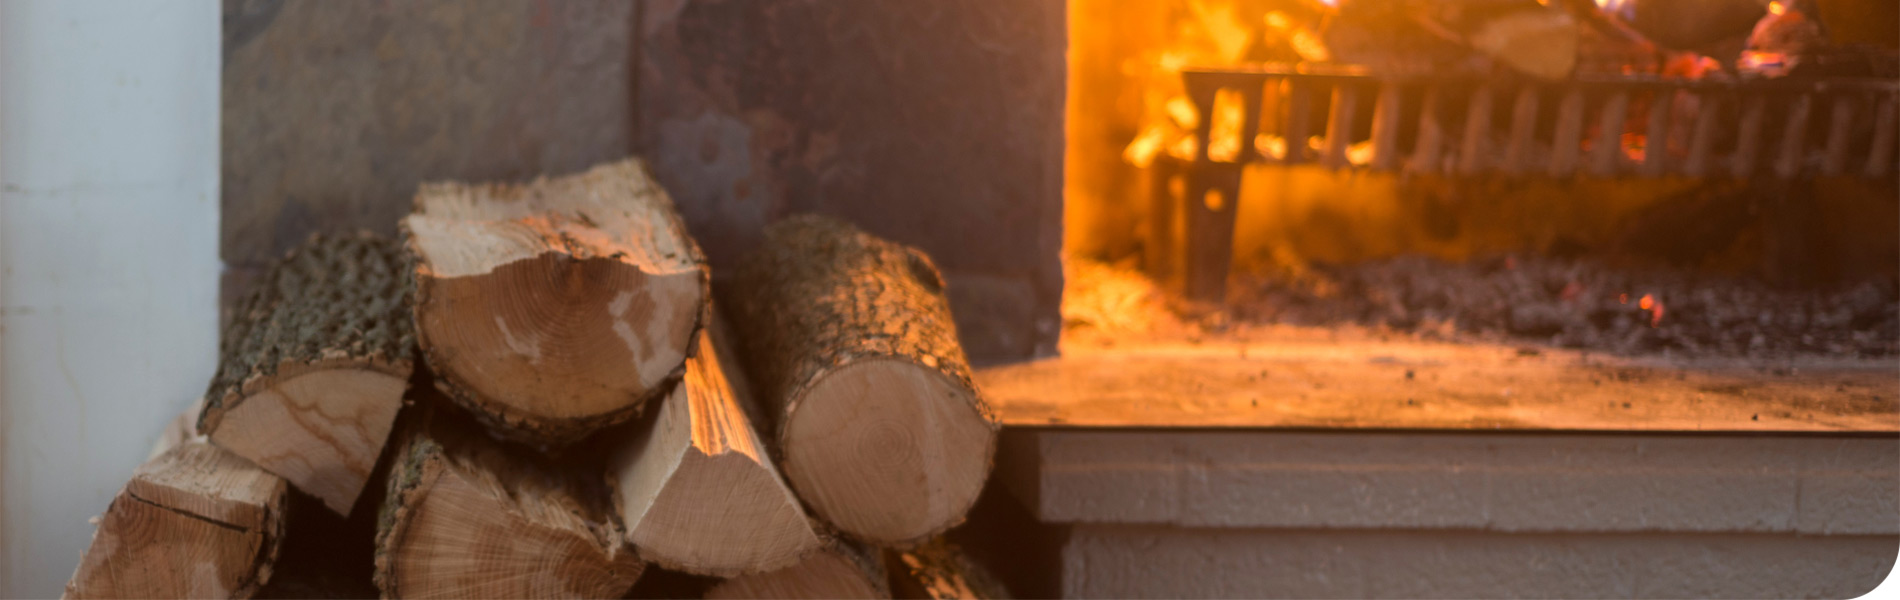 New study reveals hidden health risks of indoor fireplaces